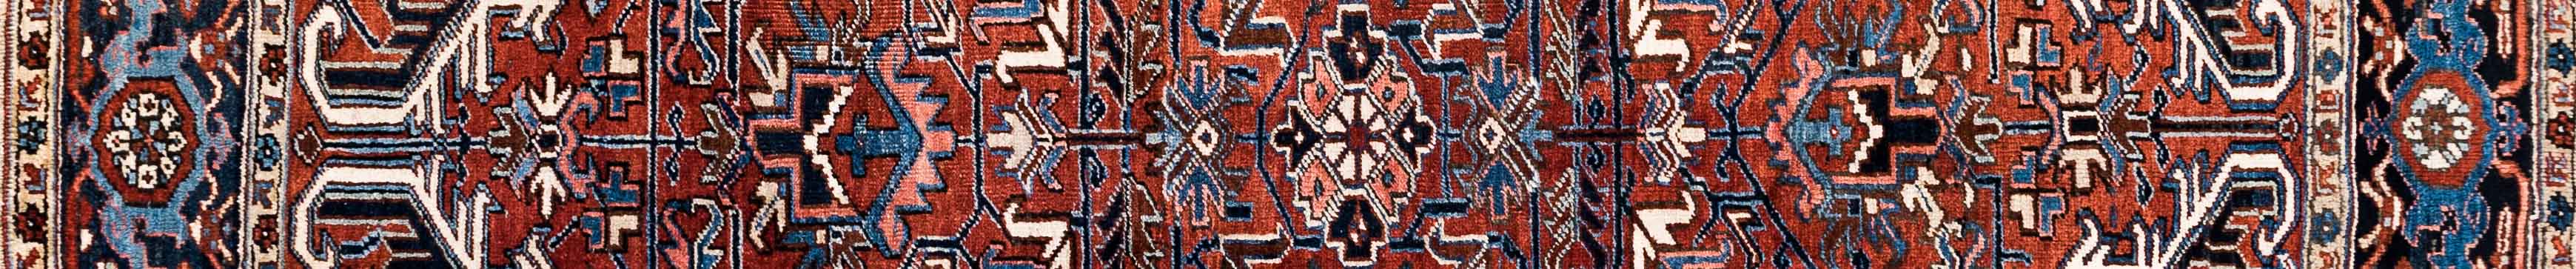 Heris Persian Carpet Rug N1Carpet Canada Montreal Tapis Persan 2150